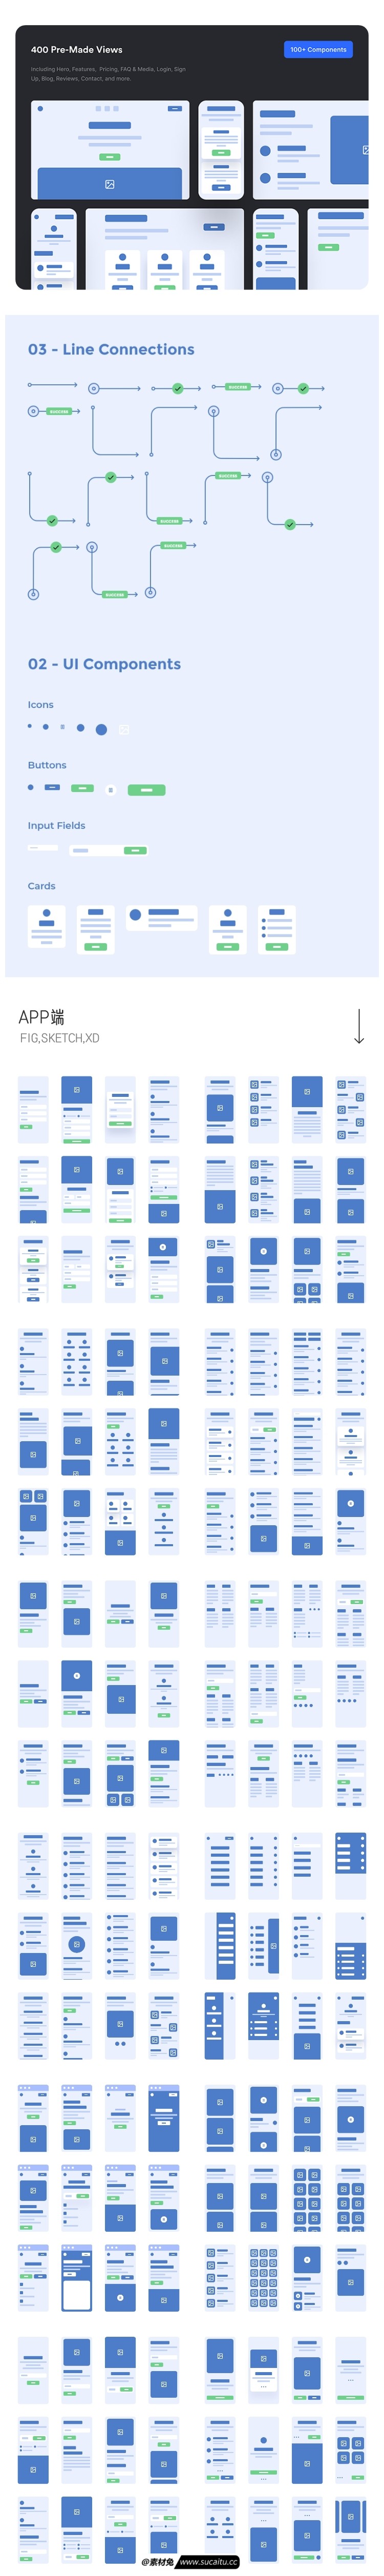 400页整套app界面素材figma简约原型图sketch设计手机移动端UI线稿模板